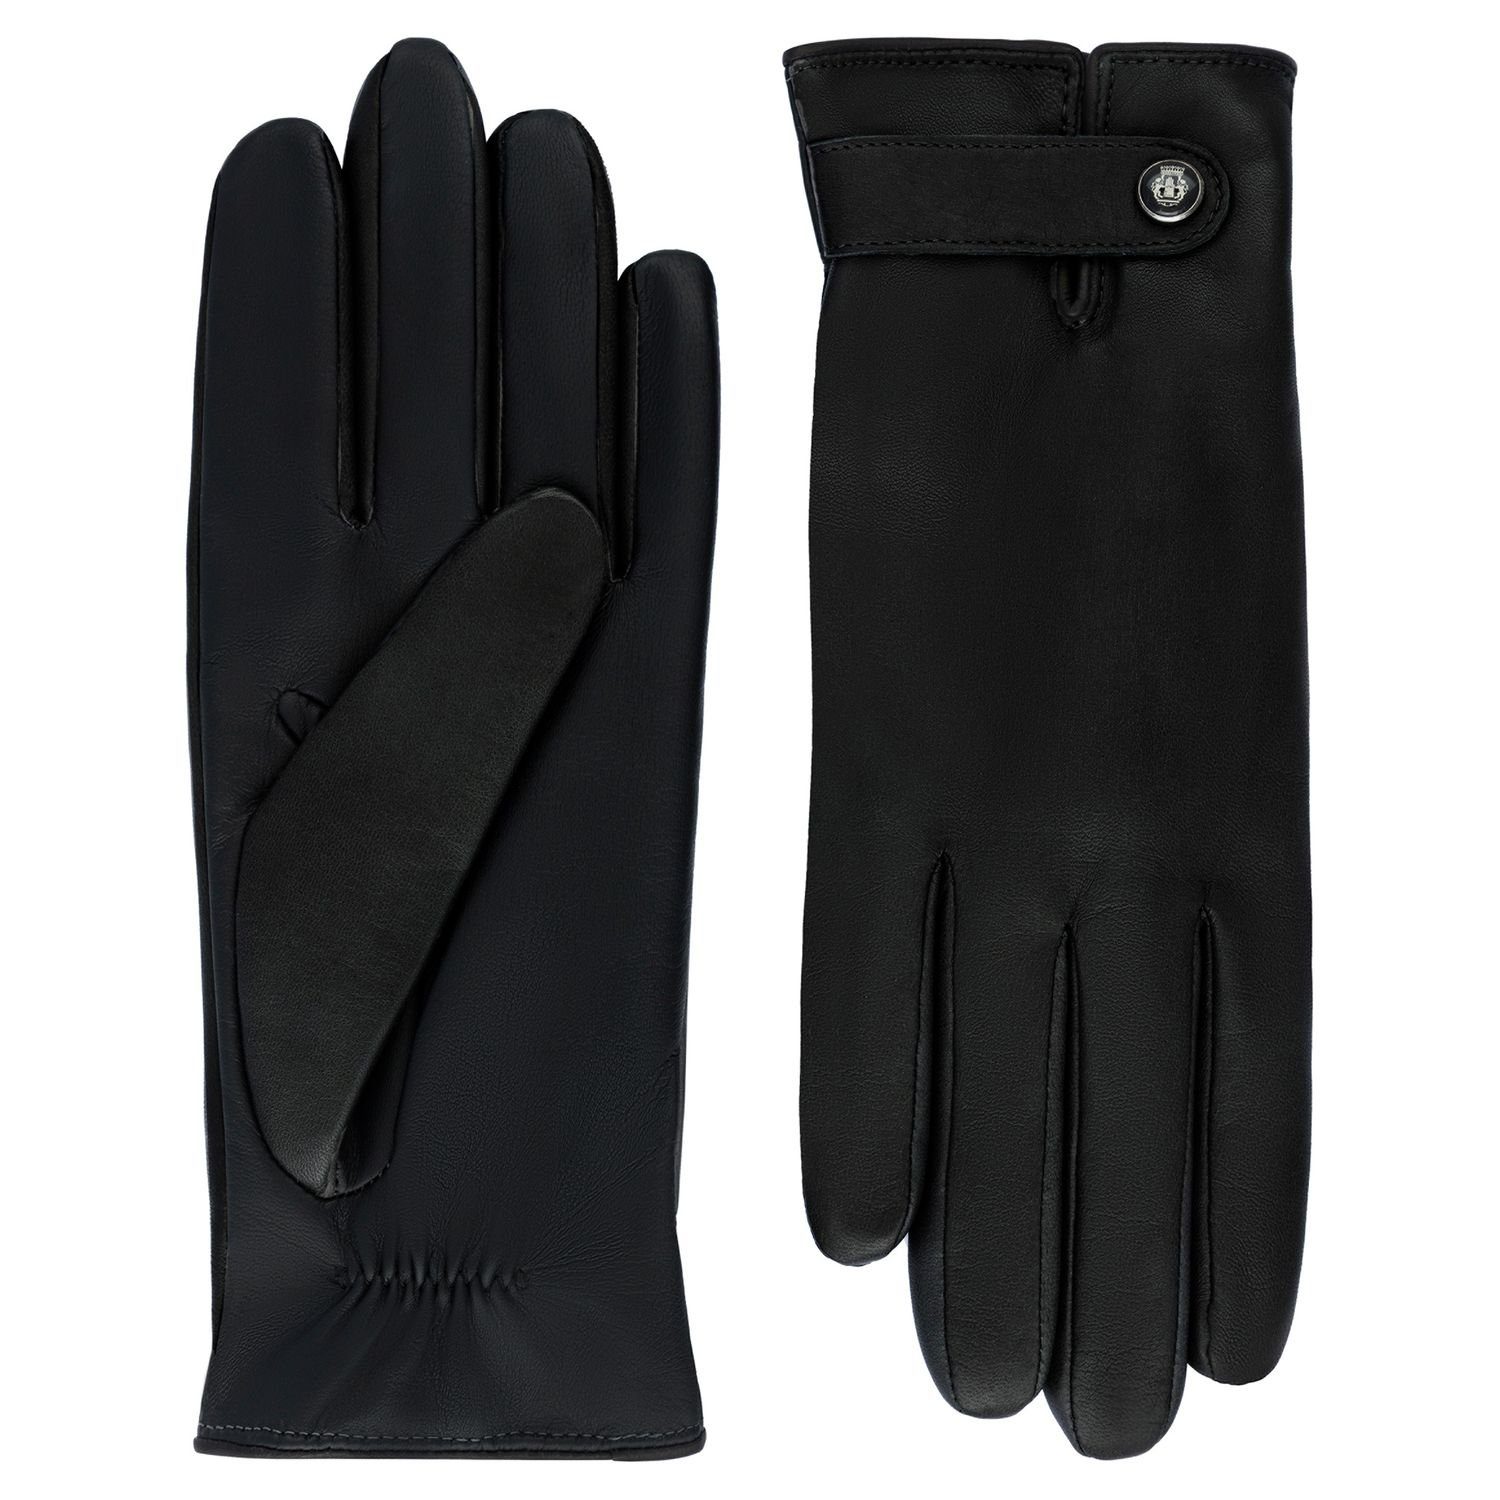 Roeckl Lederhandschuhe Damen Leder Handschuhe mit Handy Touch Funktion  online kaufen | OTTO